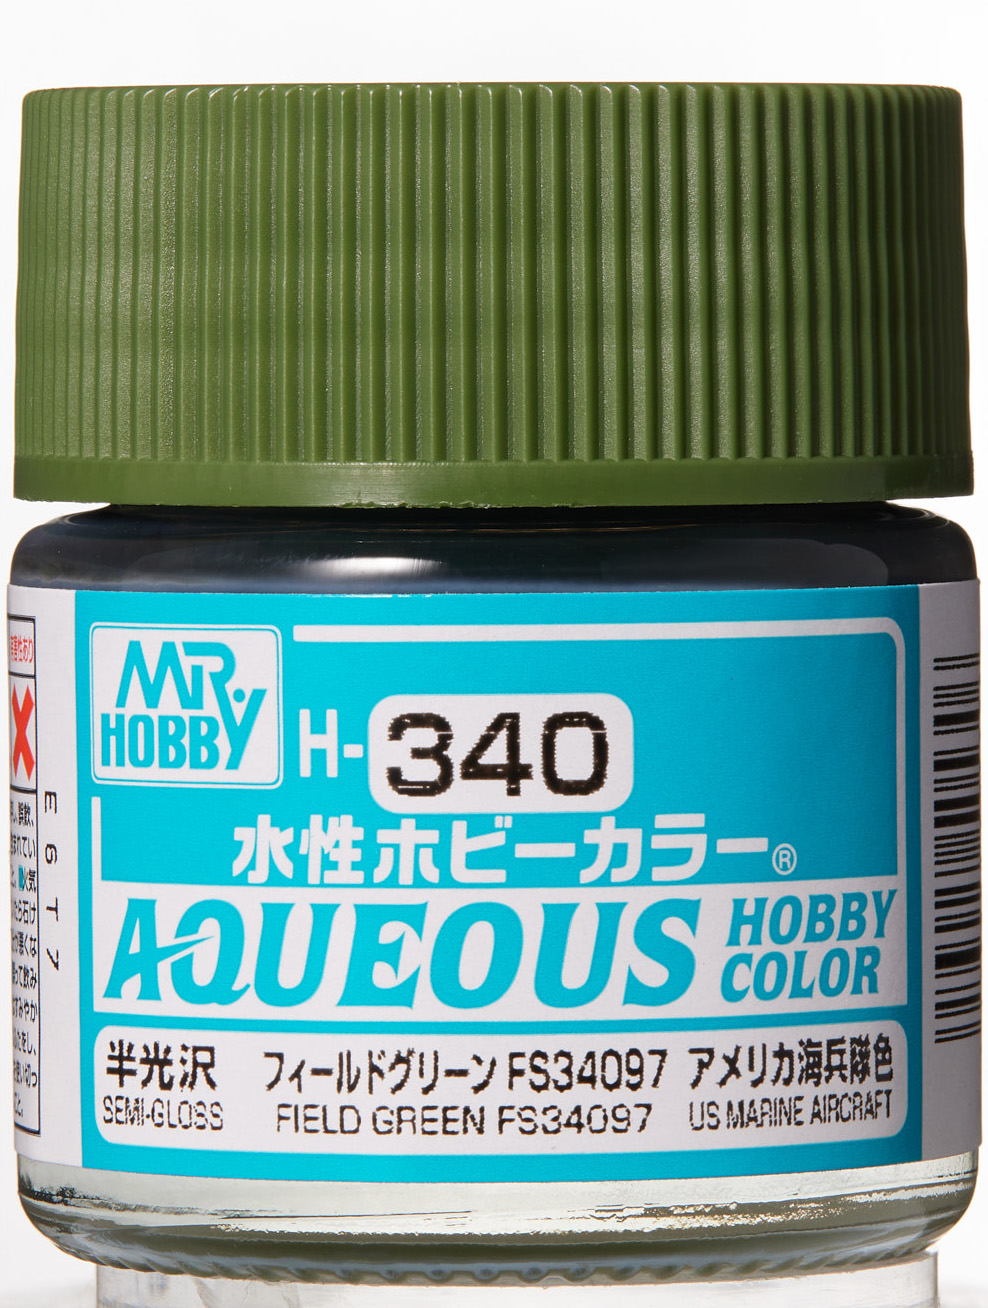 Mr. Aqueous Hobby Color - Field Green FS34097 - H340 - Feldgrün FS34097